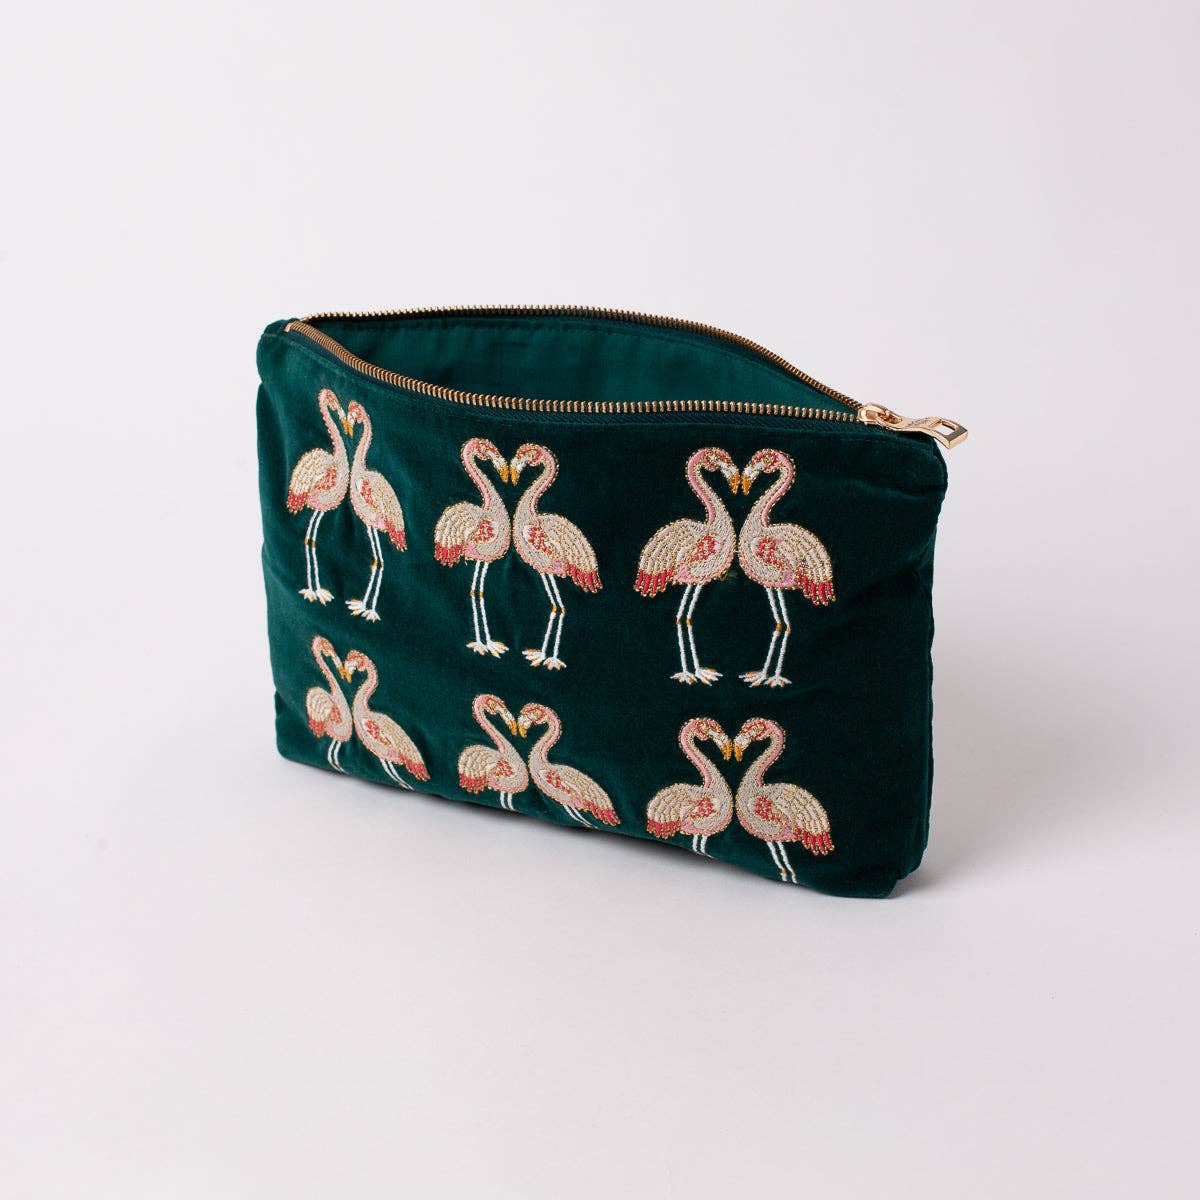 Elizabeth scarlett flamingo every day pouch emerald